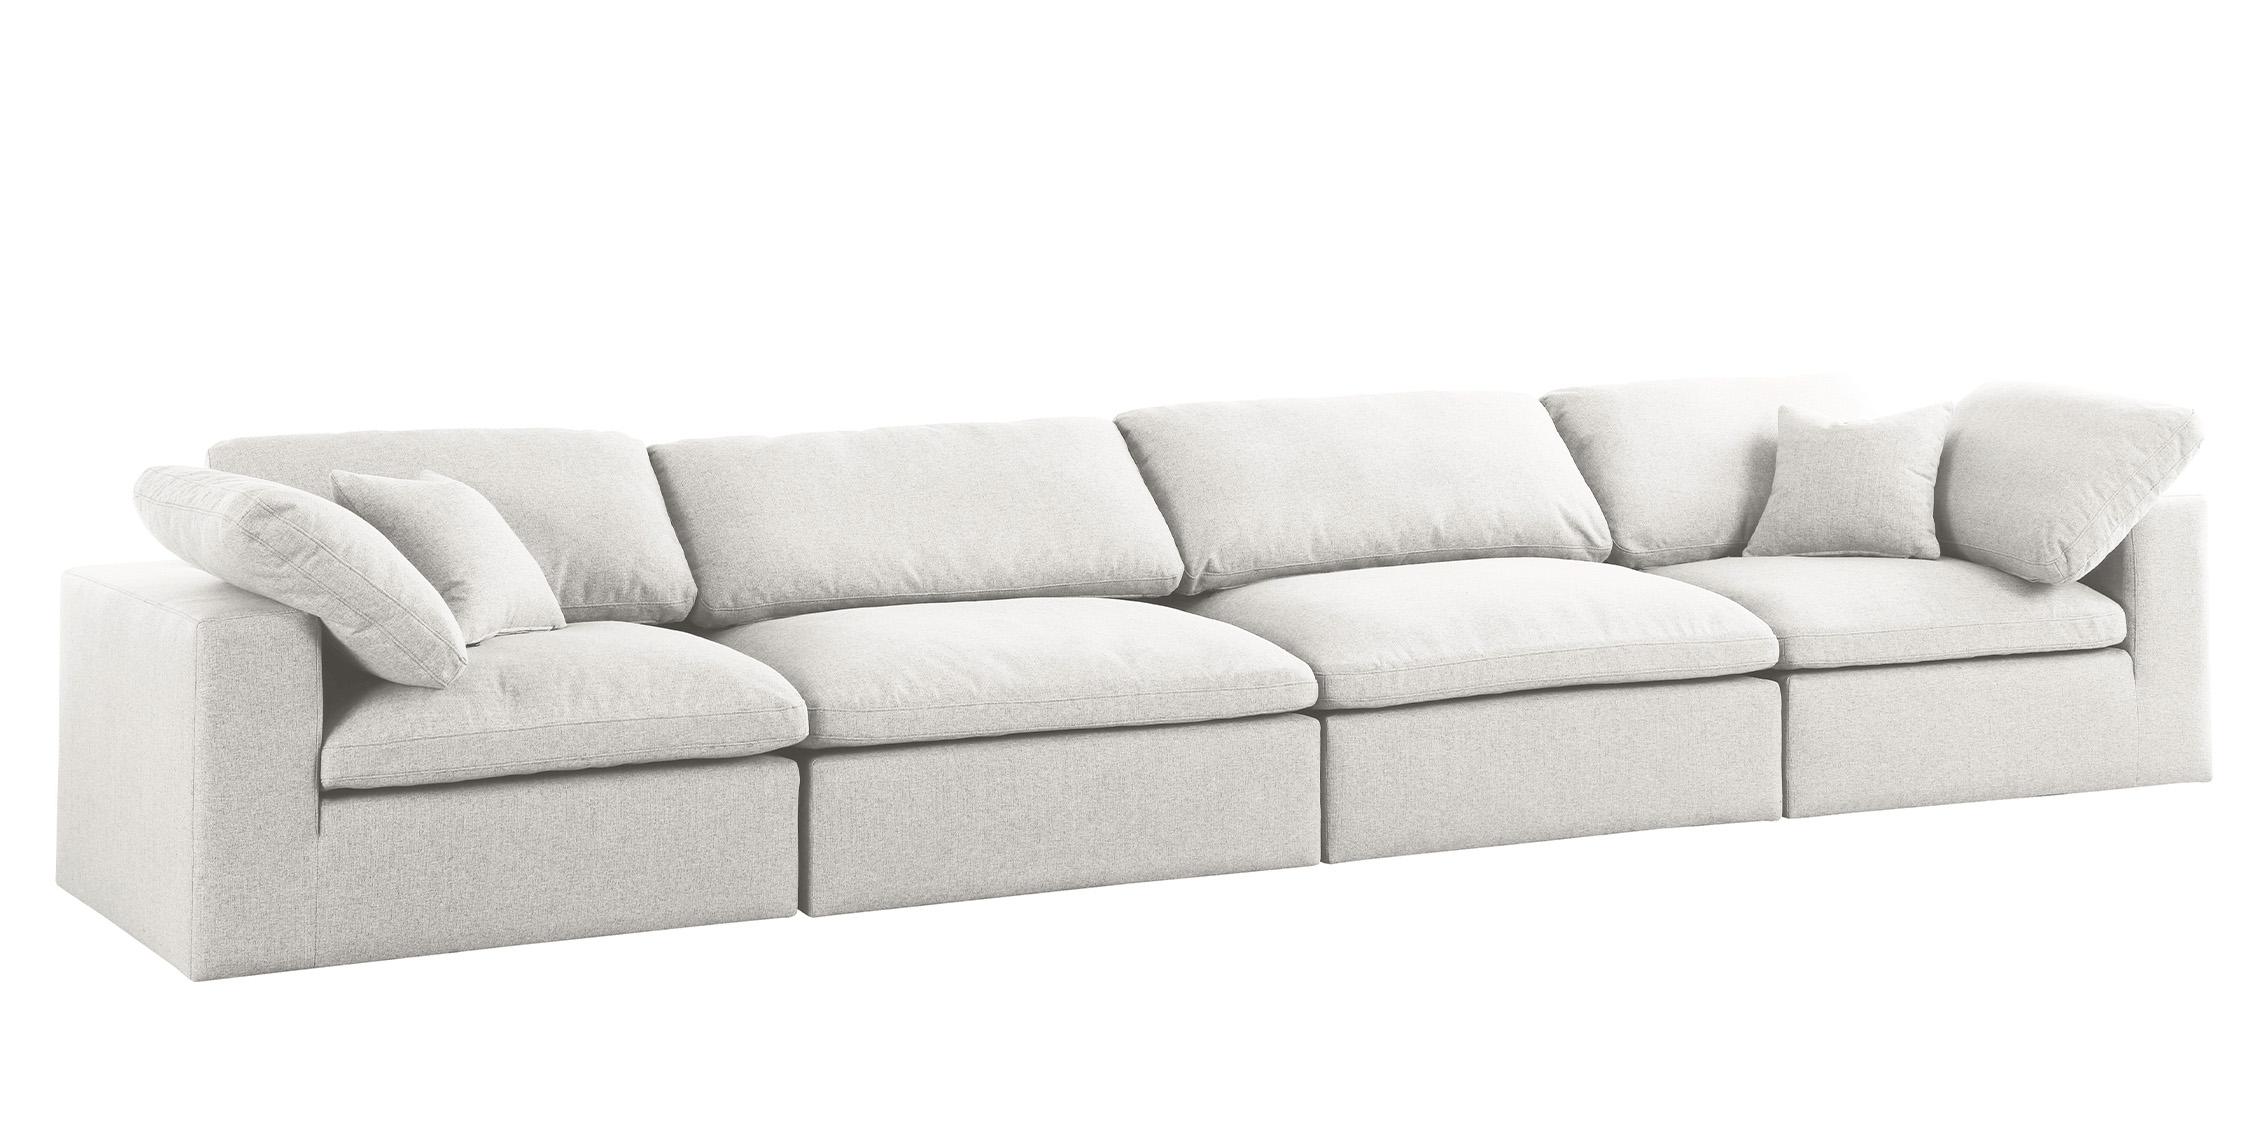 

    
Serene Cream Linen Textured Fabric Deluxe Comfort Modular Sofa S158 Meridian
